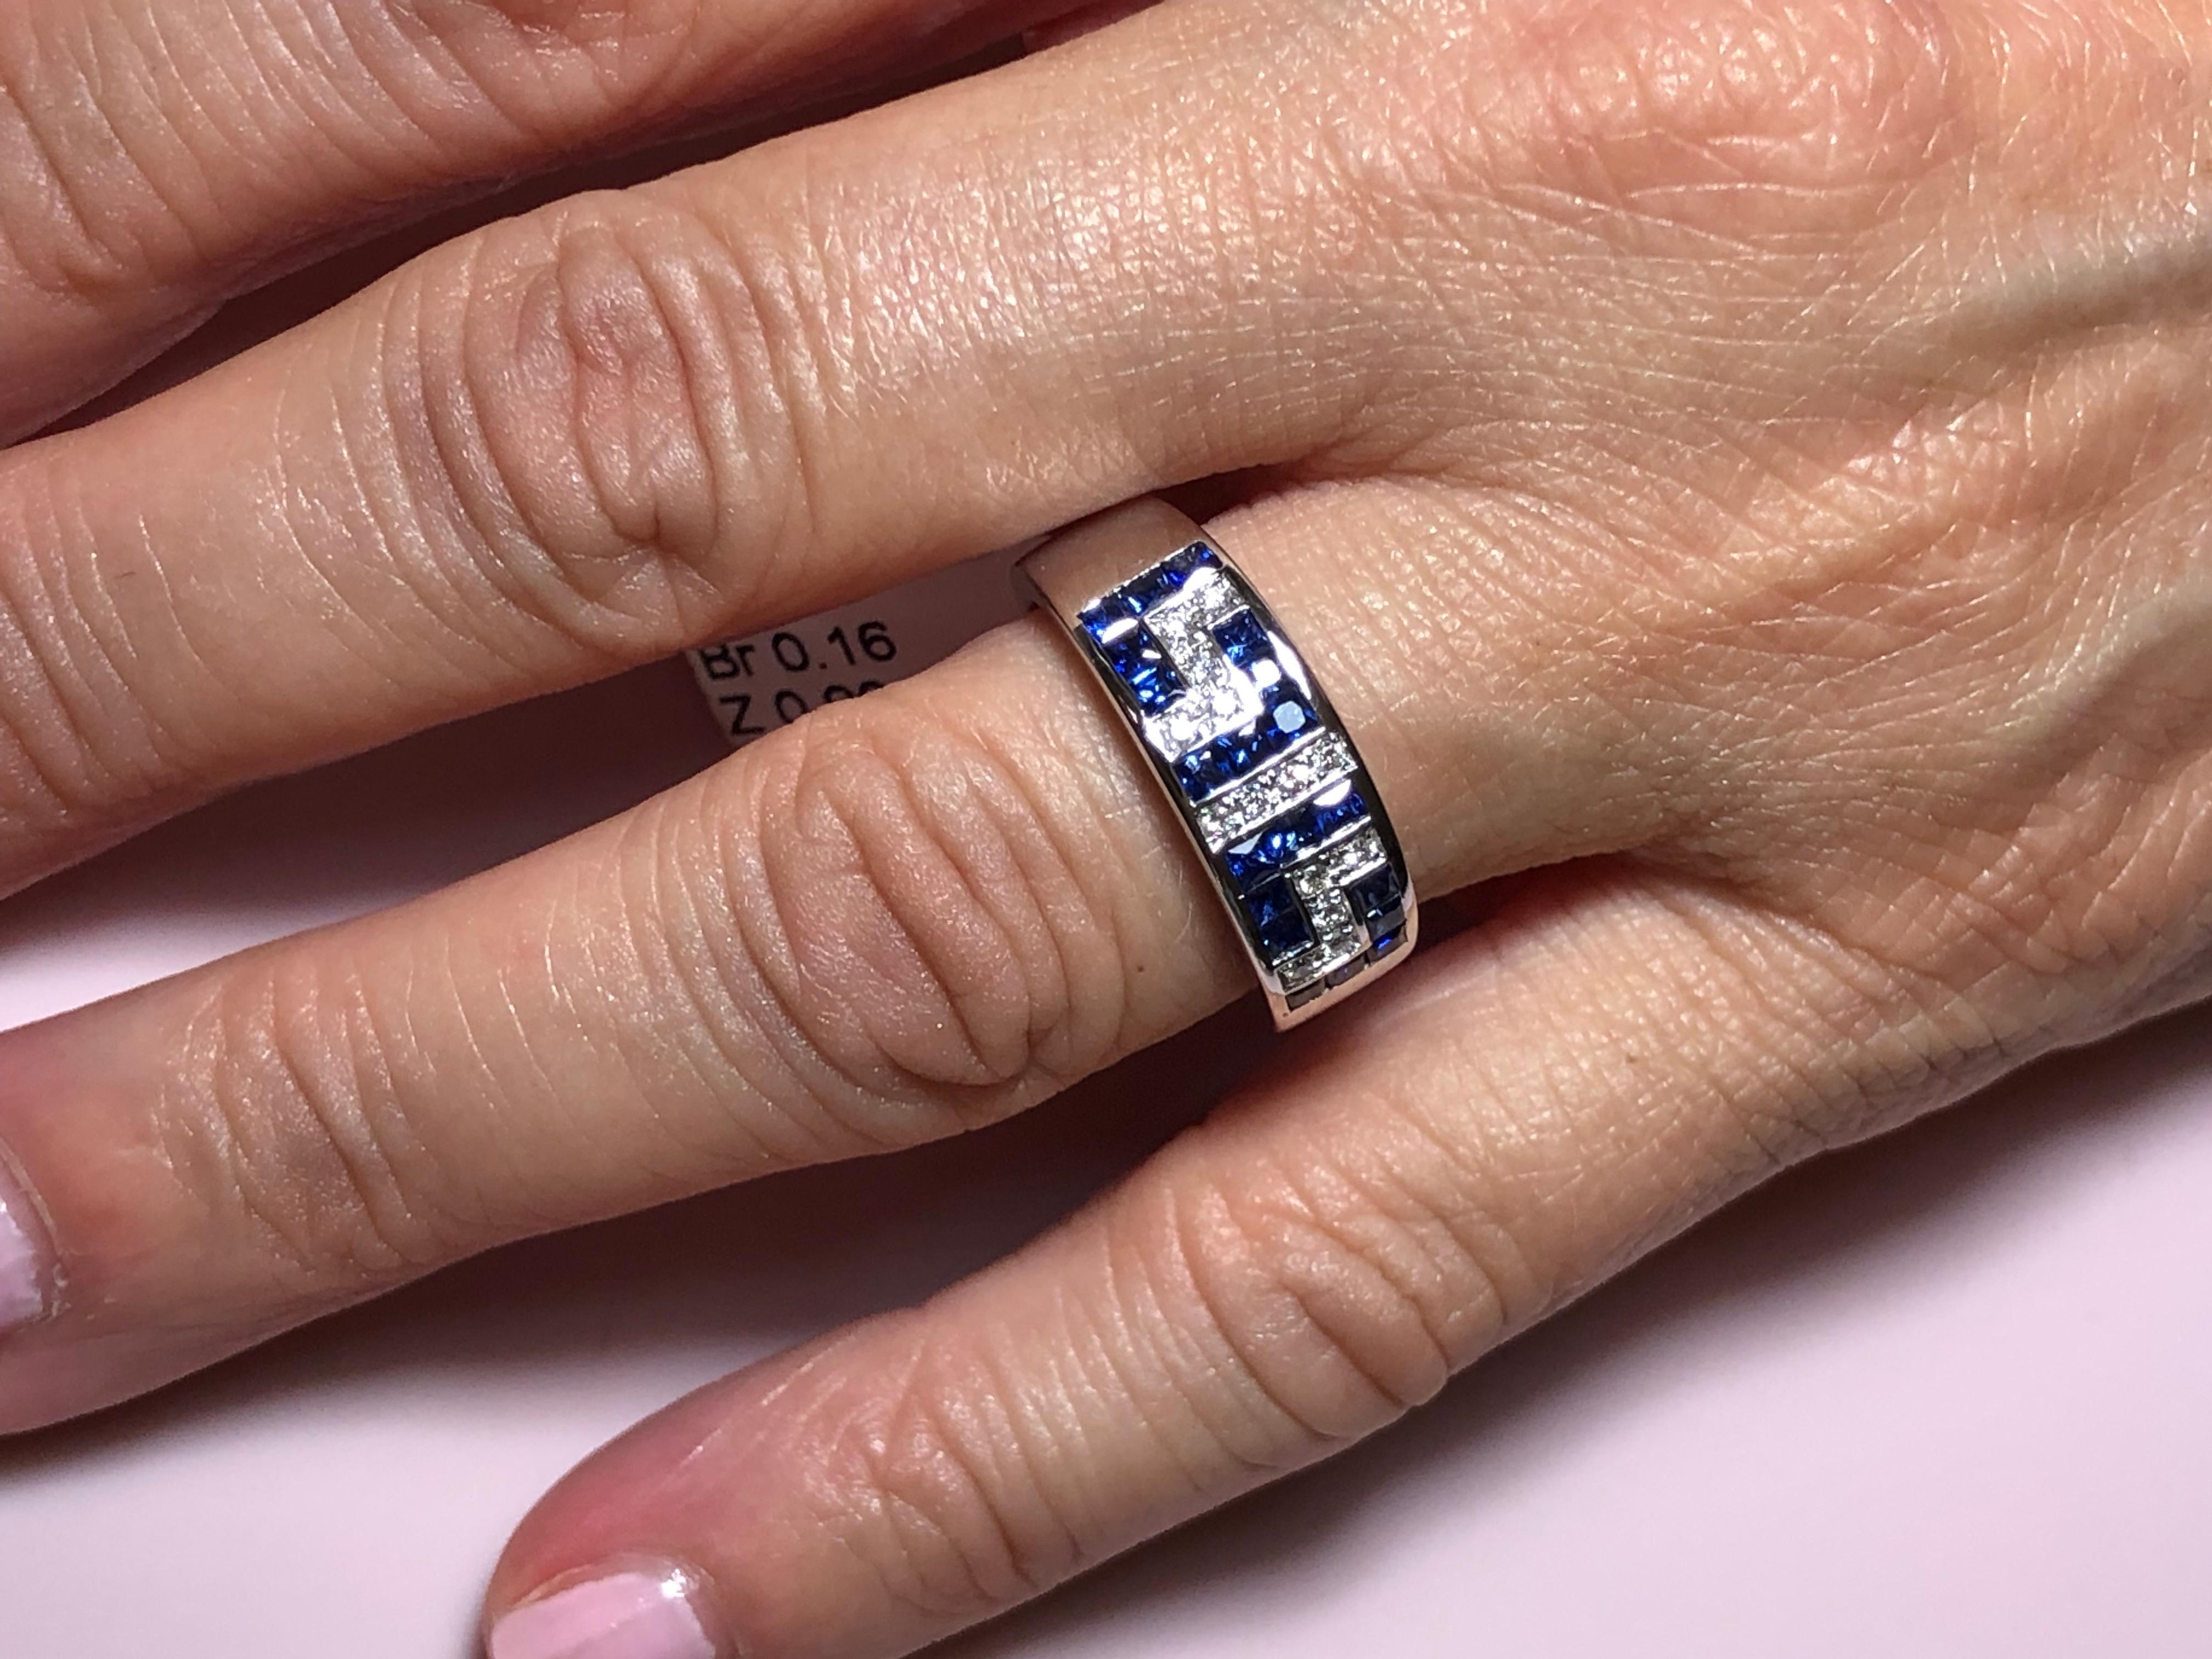 greek key ring with diamonds